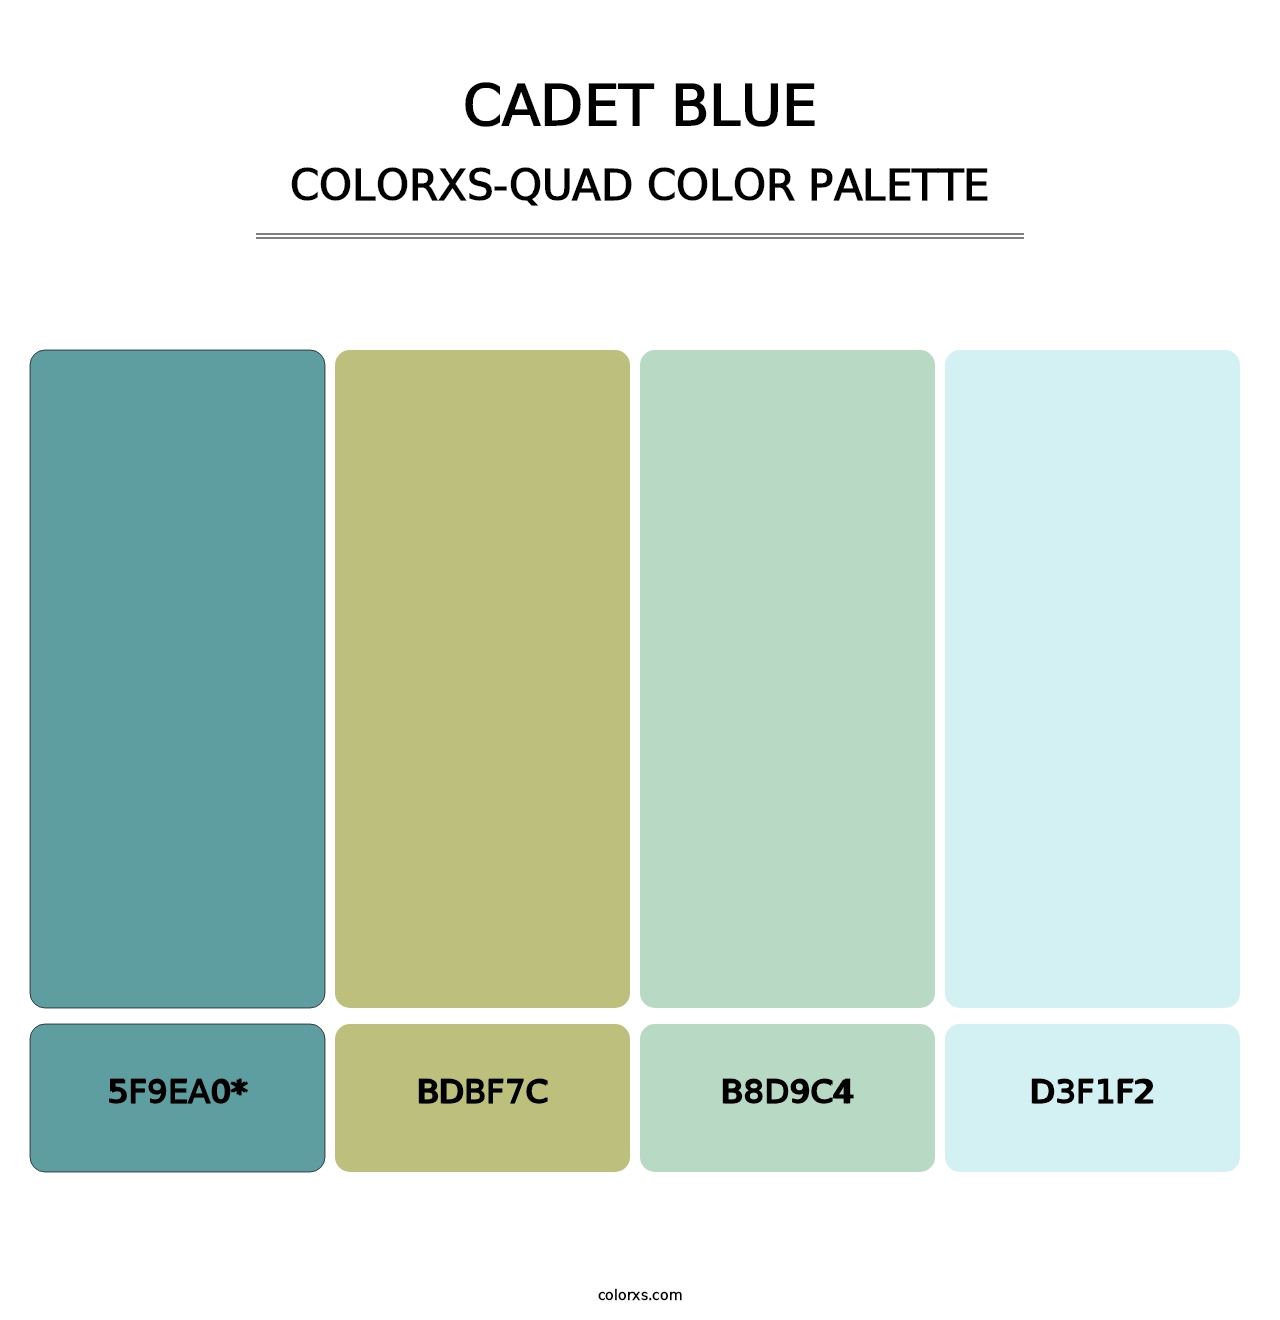 Cadet Blue - Colorxs Quad Palette